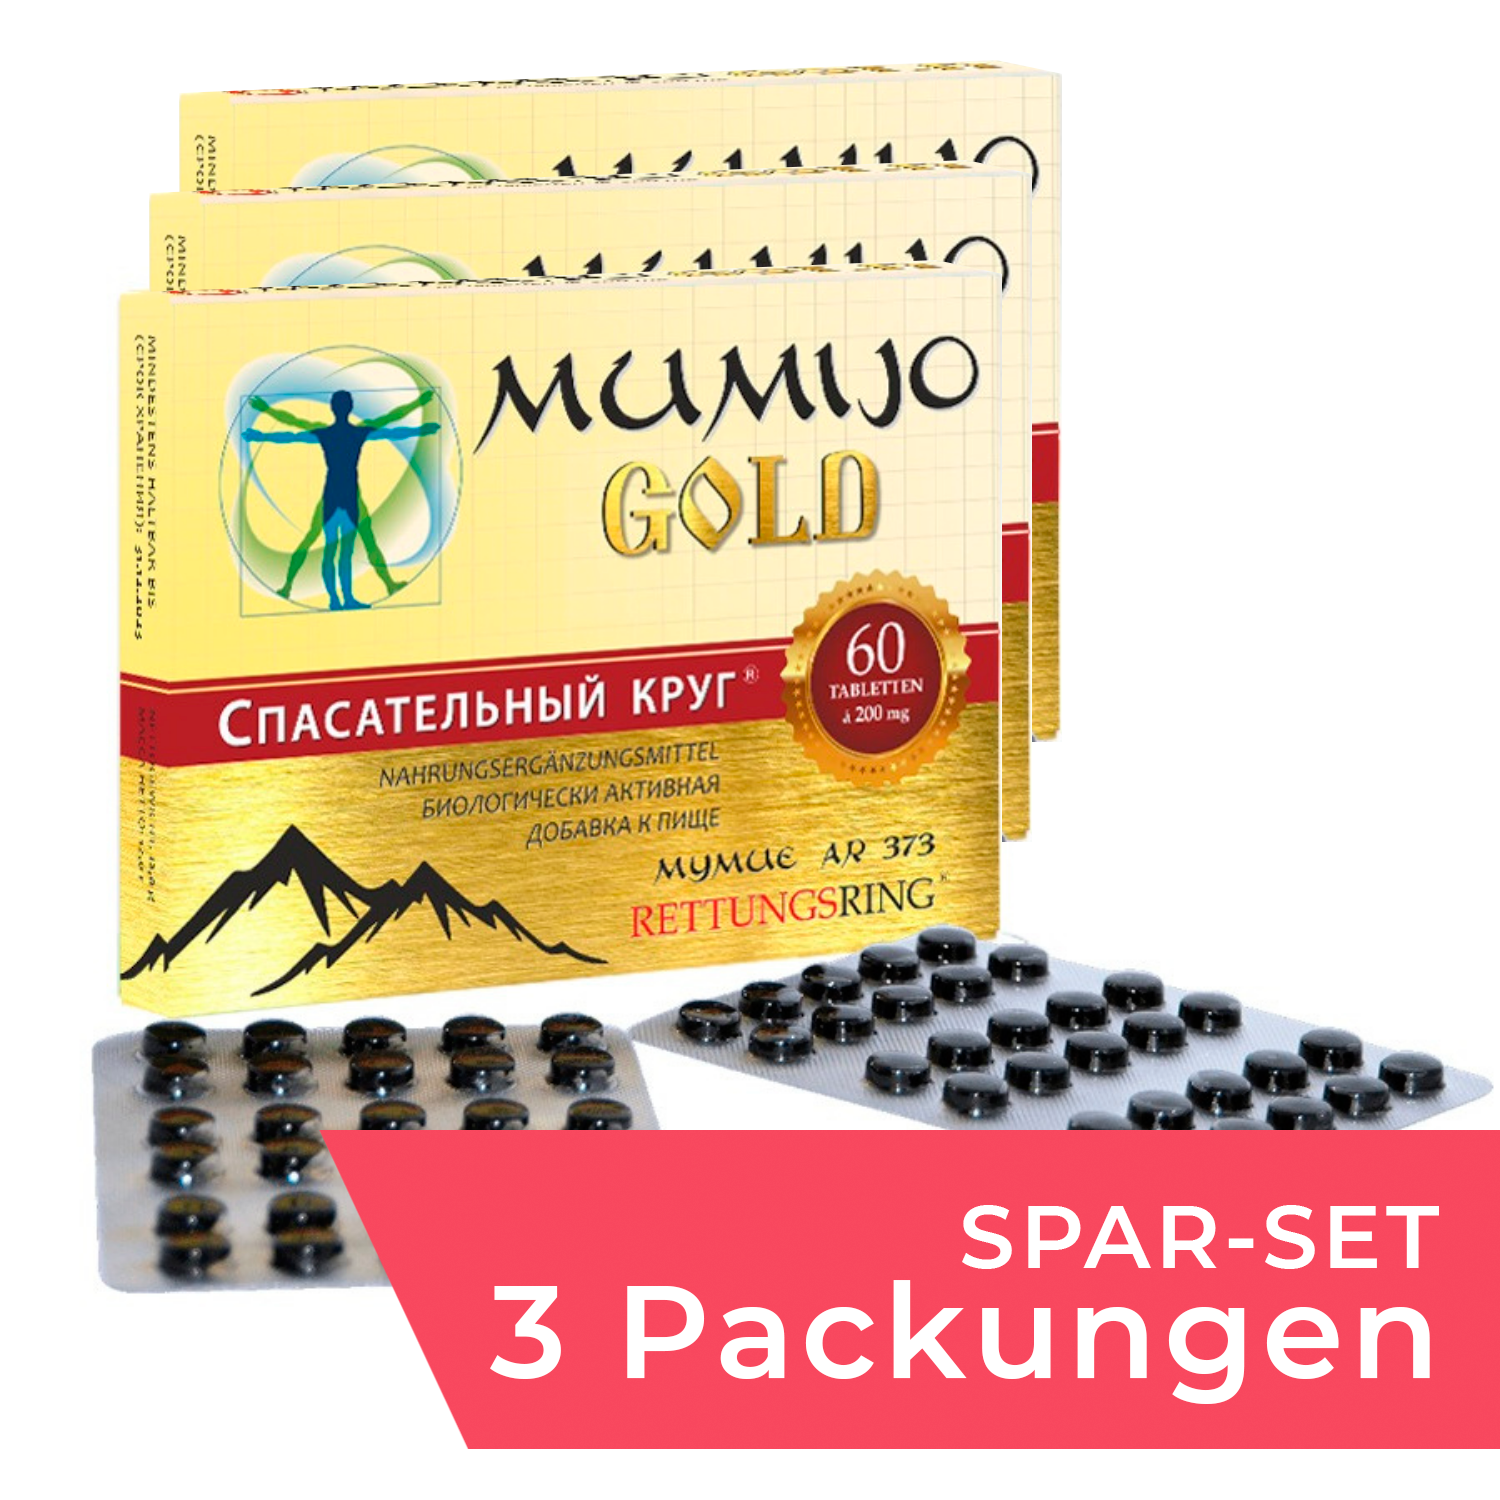 Spar-Set: 3 Packungen Mumijo "Gold", 60 Tabl.